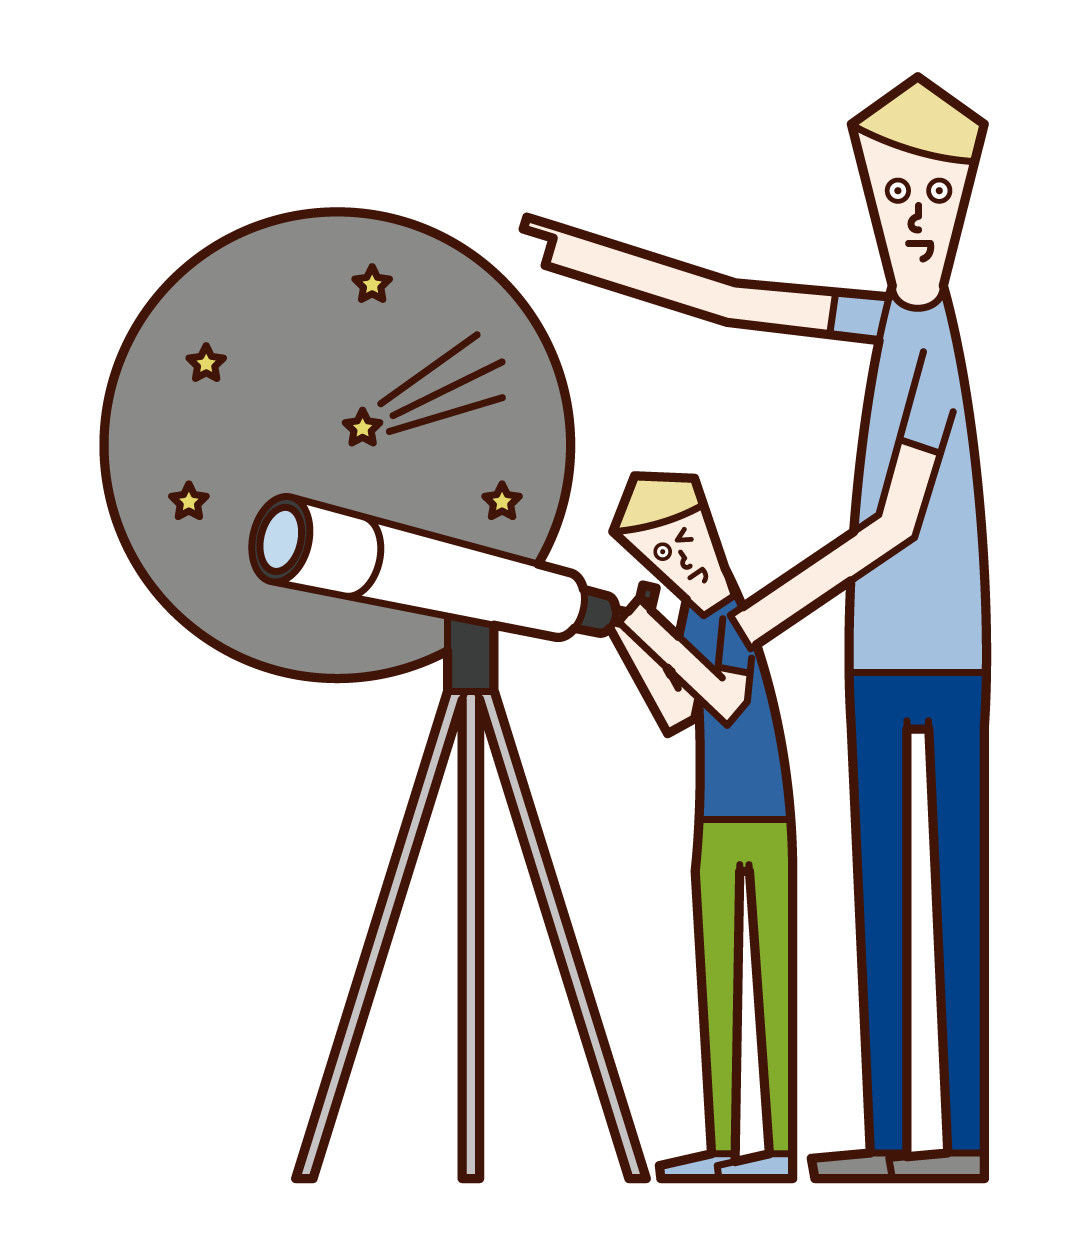 望遠鏡で星空を観察する親子のイラスト フリーイラスト素材 Kukukeke ククケケ